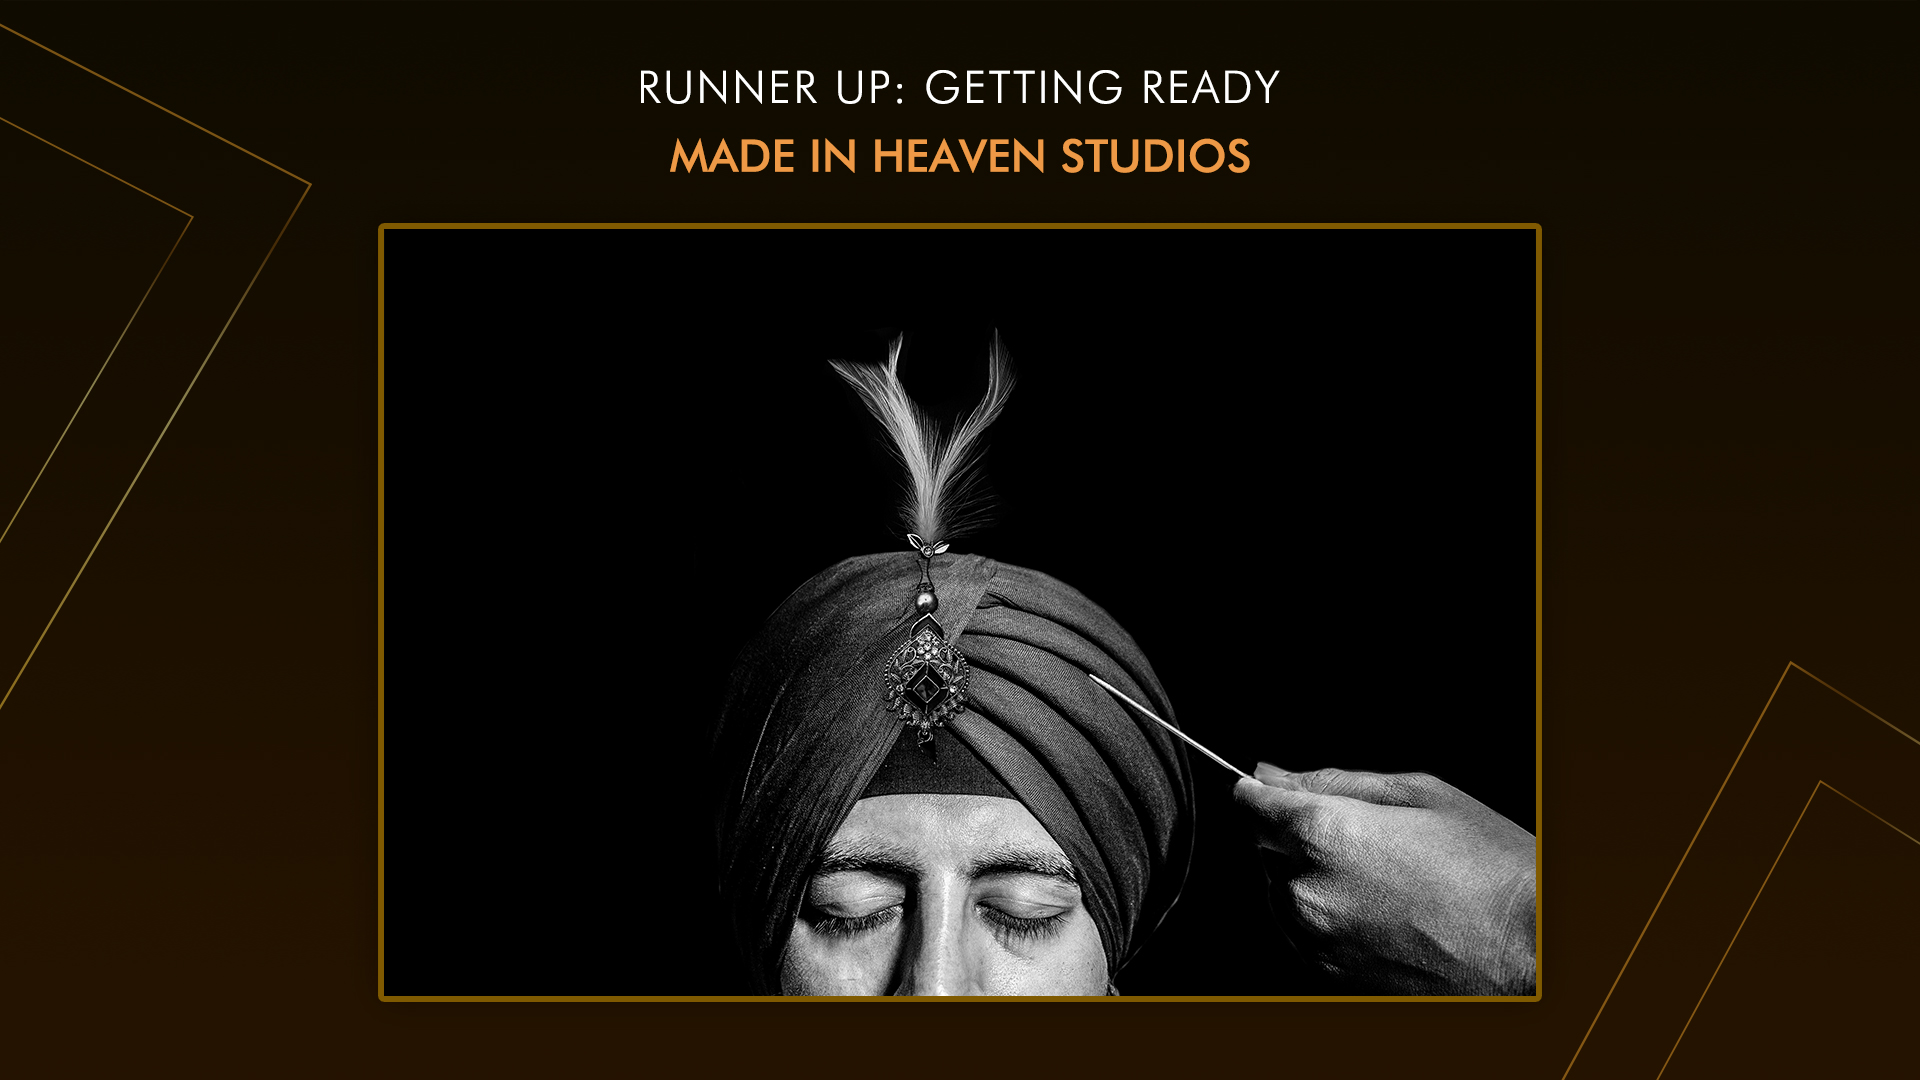 Made in Heaven Studios